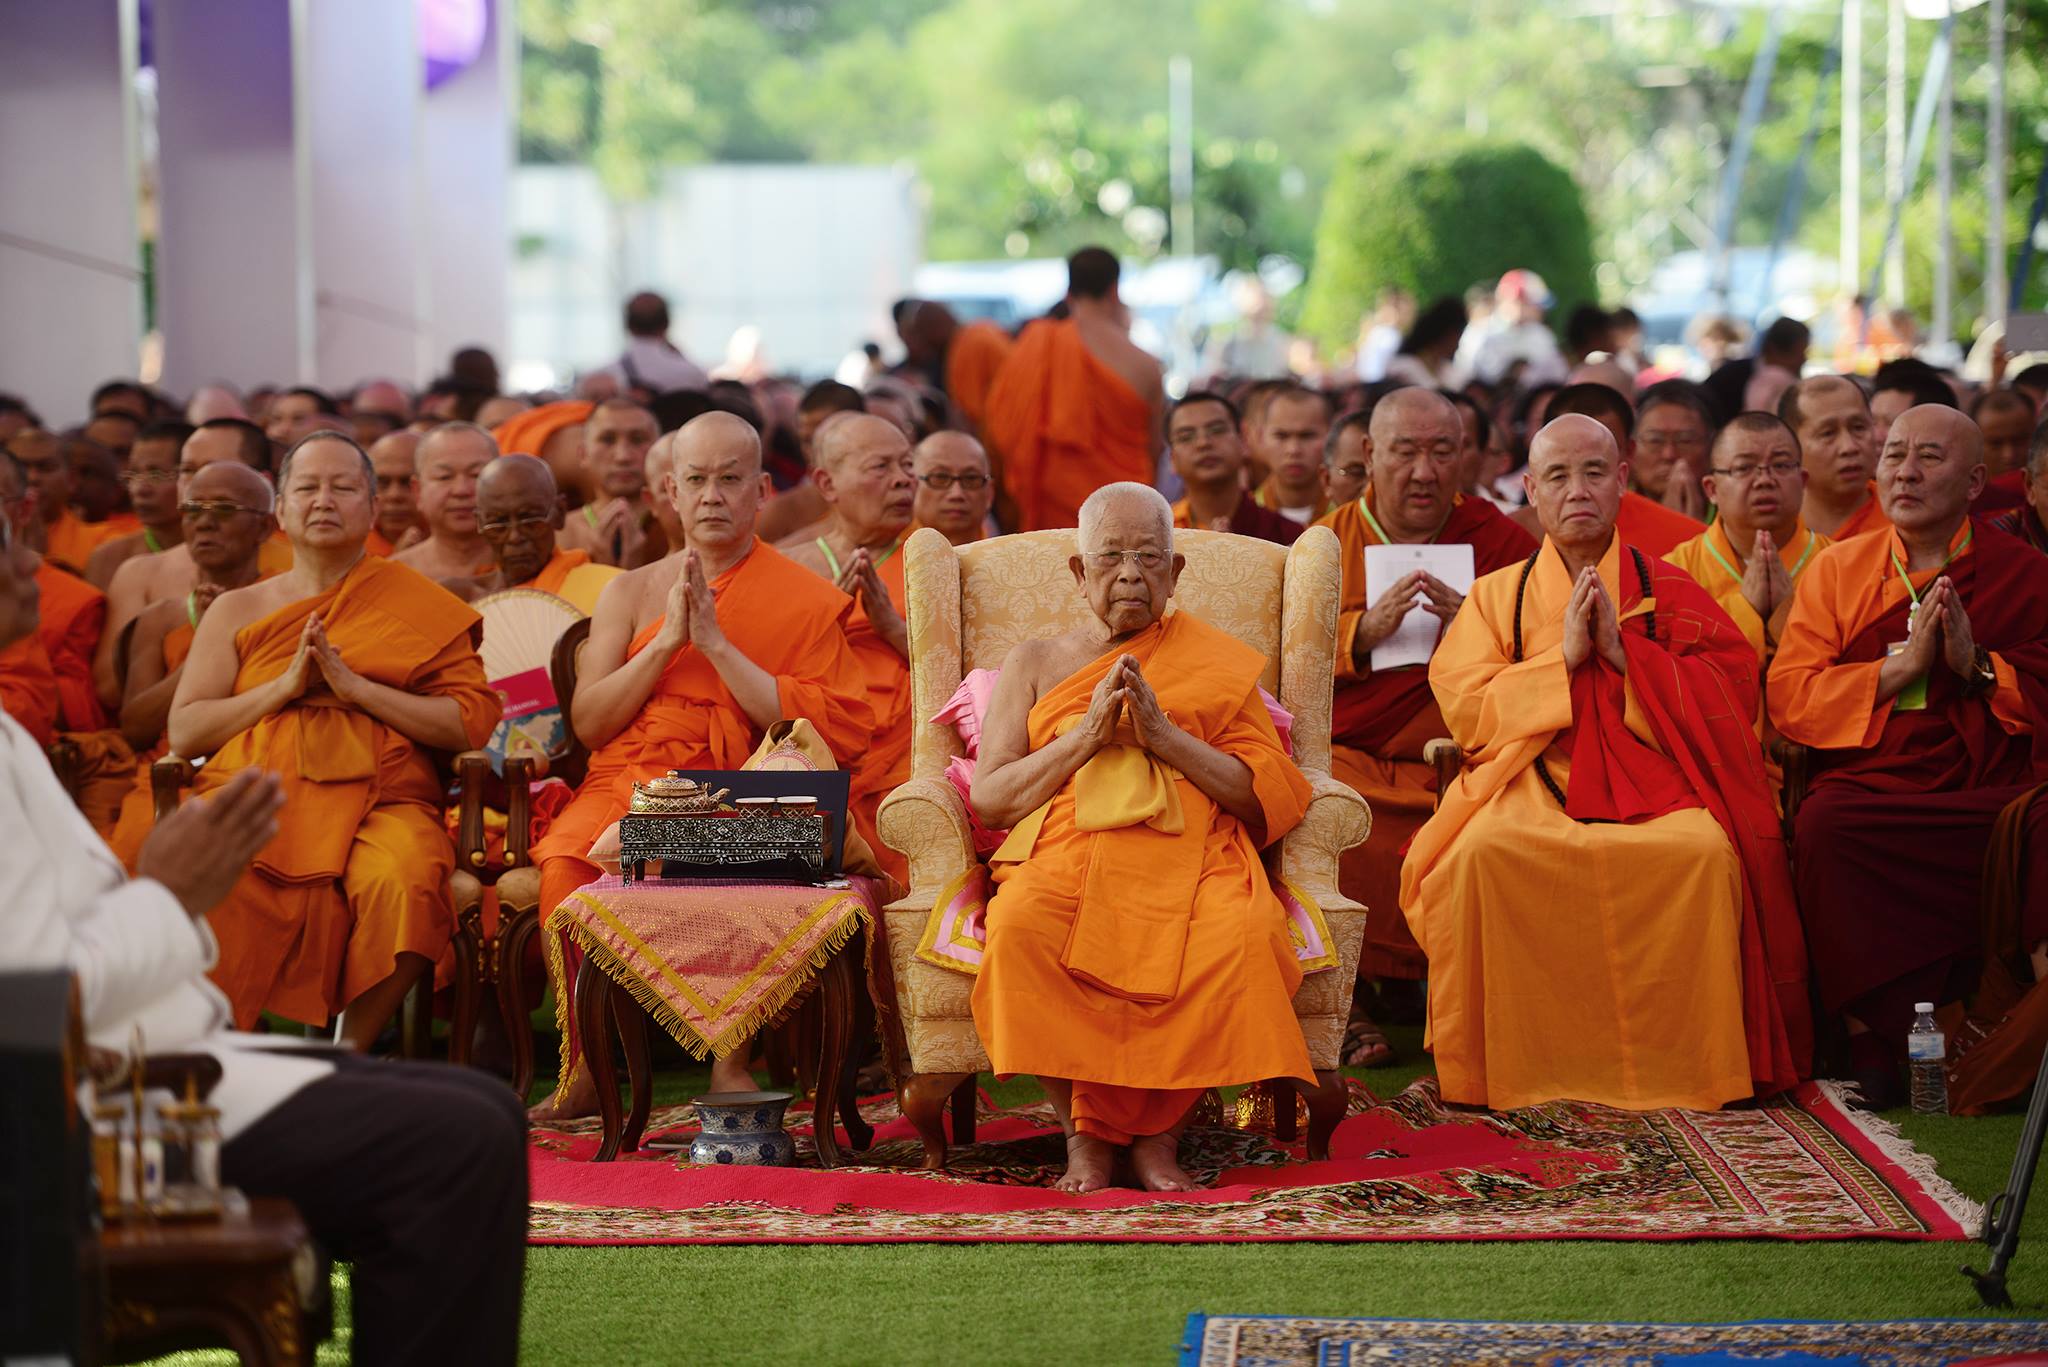 A harmadik napon az ENSZ bangkoki épületében folytatódott az ünnepség, ahol az elmúlt napok összegzéseként kiadták a bangkoki deklarációt, lásd: <a href="http://bit.ly/1D8E5Ip">http://bit.ly/1D8E5Ip</a>  Majd végül a Buddhamonthon parkban gyújtottak a résztvevők gyertyát Maha Chakri Sirindhorn thai hercegnő 60. születésnapjának tiszteletére